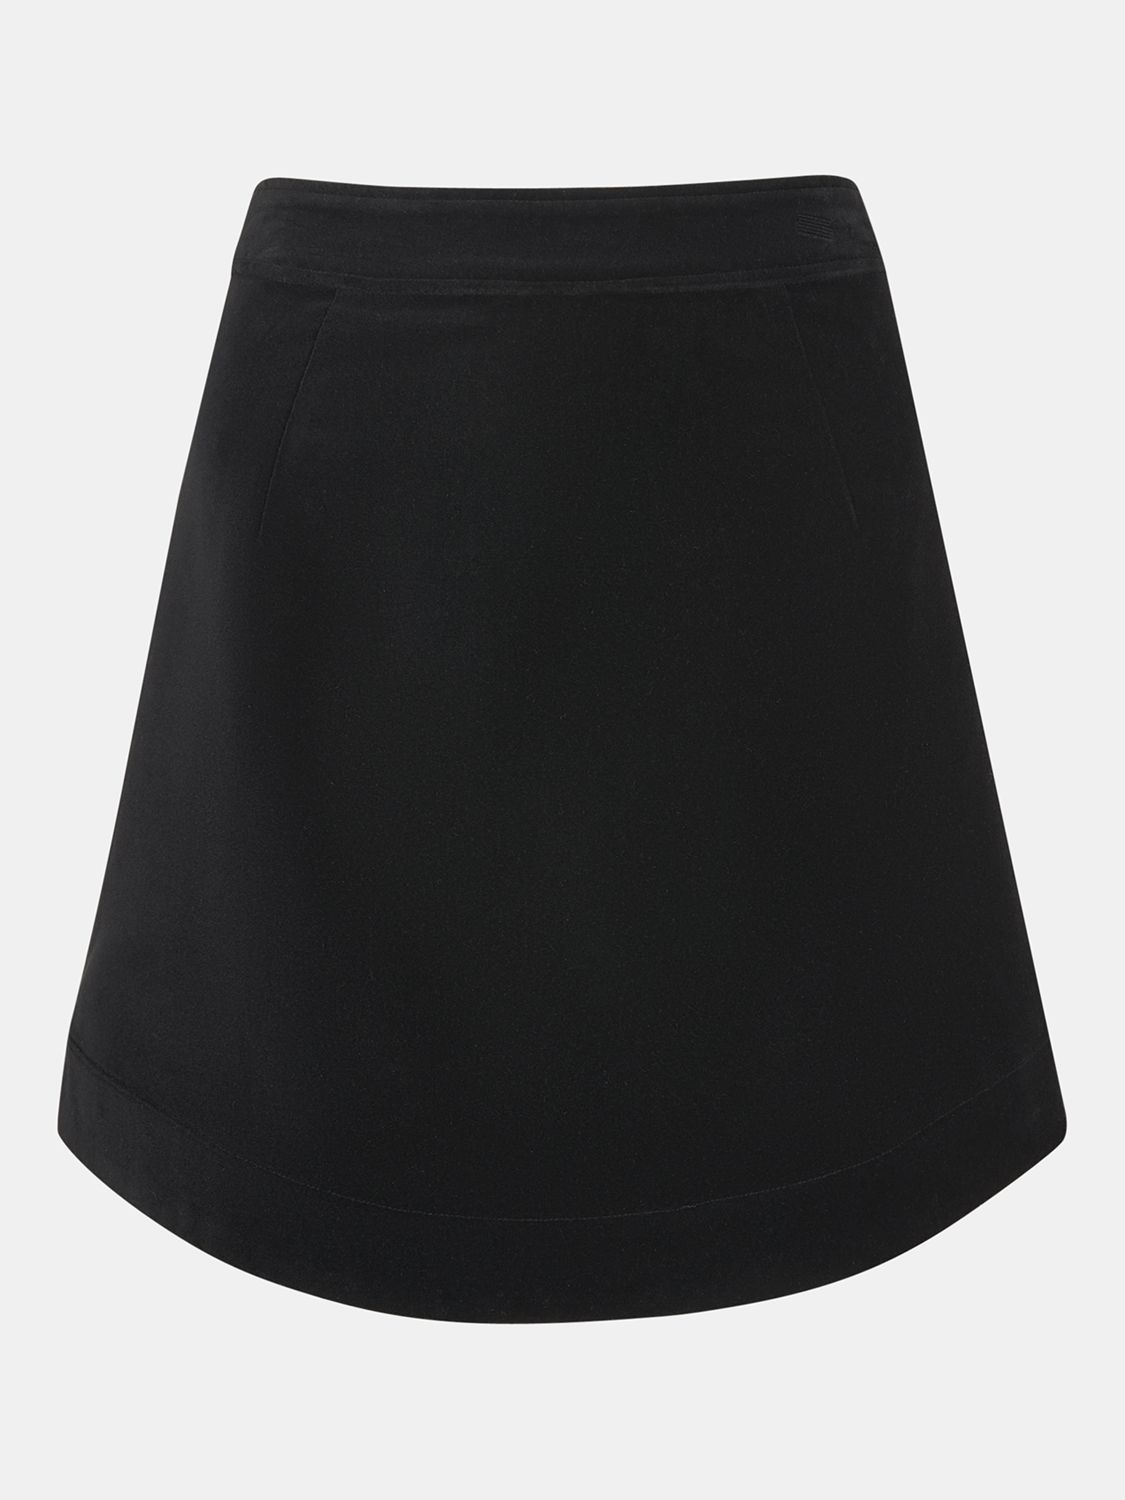 Whistles Velvet Curved Hem Mini Skirt, Black at John Lewis & Partners